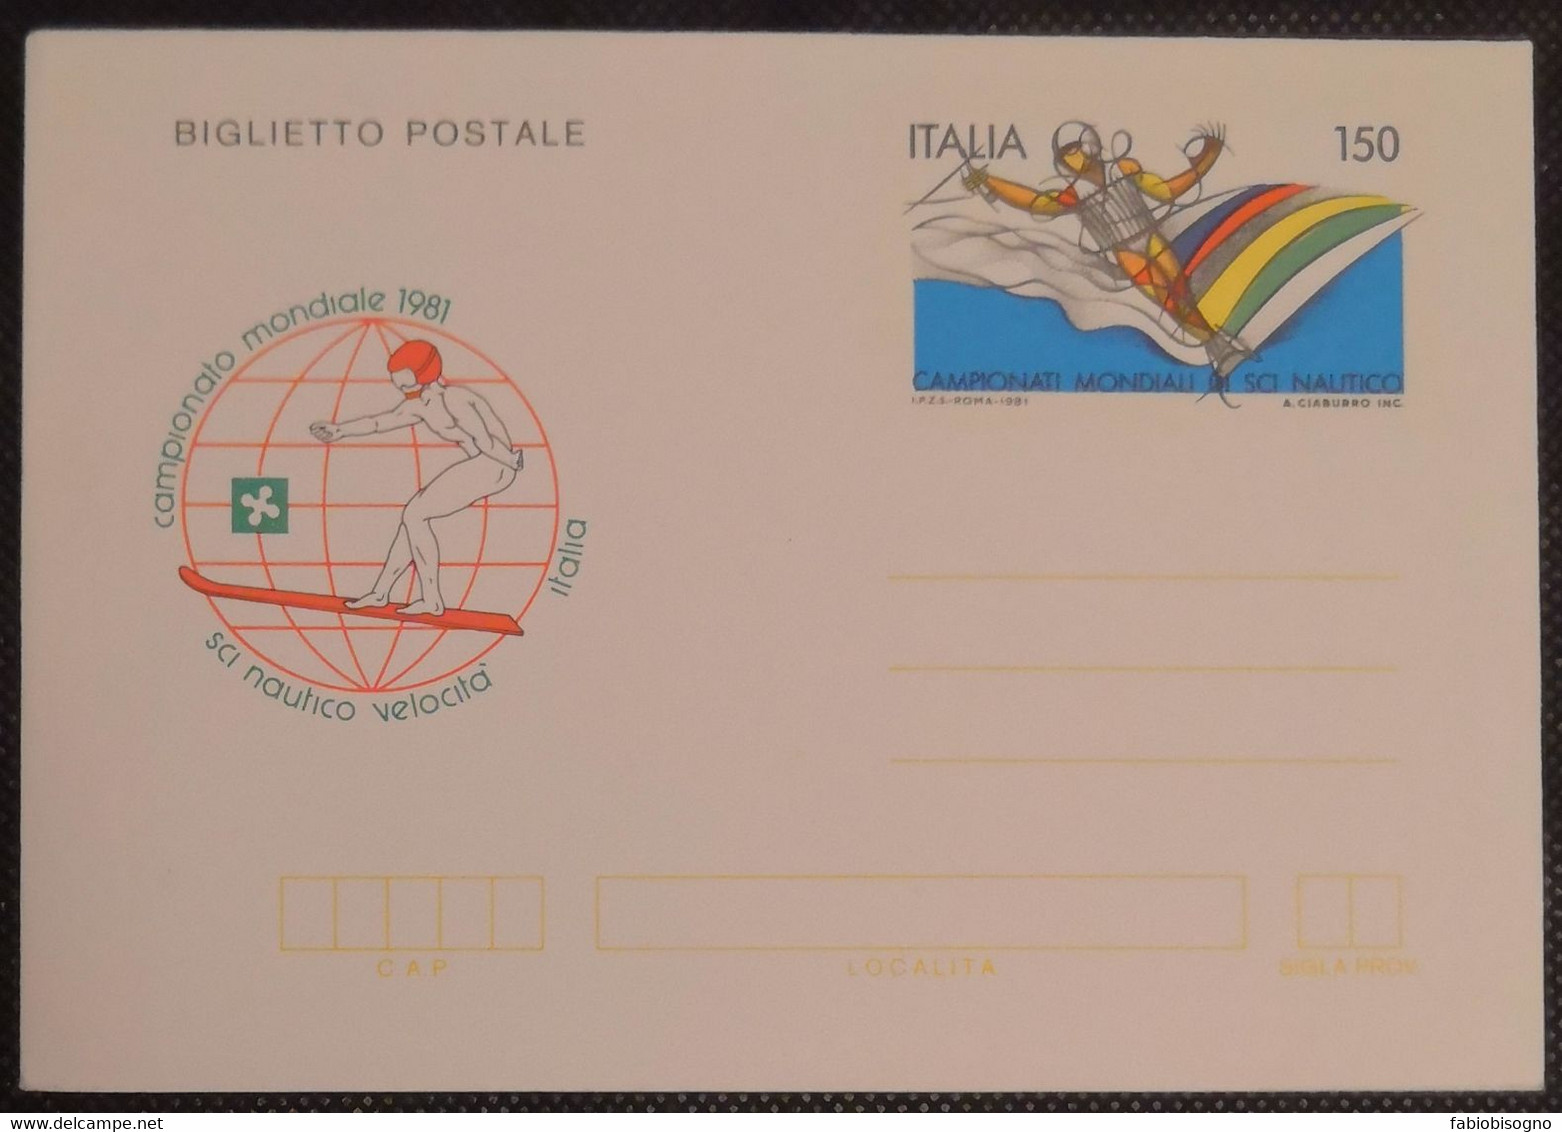 1981 Italia L.150 - Campionato Mondiale Sci Nautico Velocità - Postal Cover - Ski Náutico